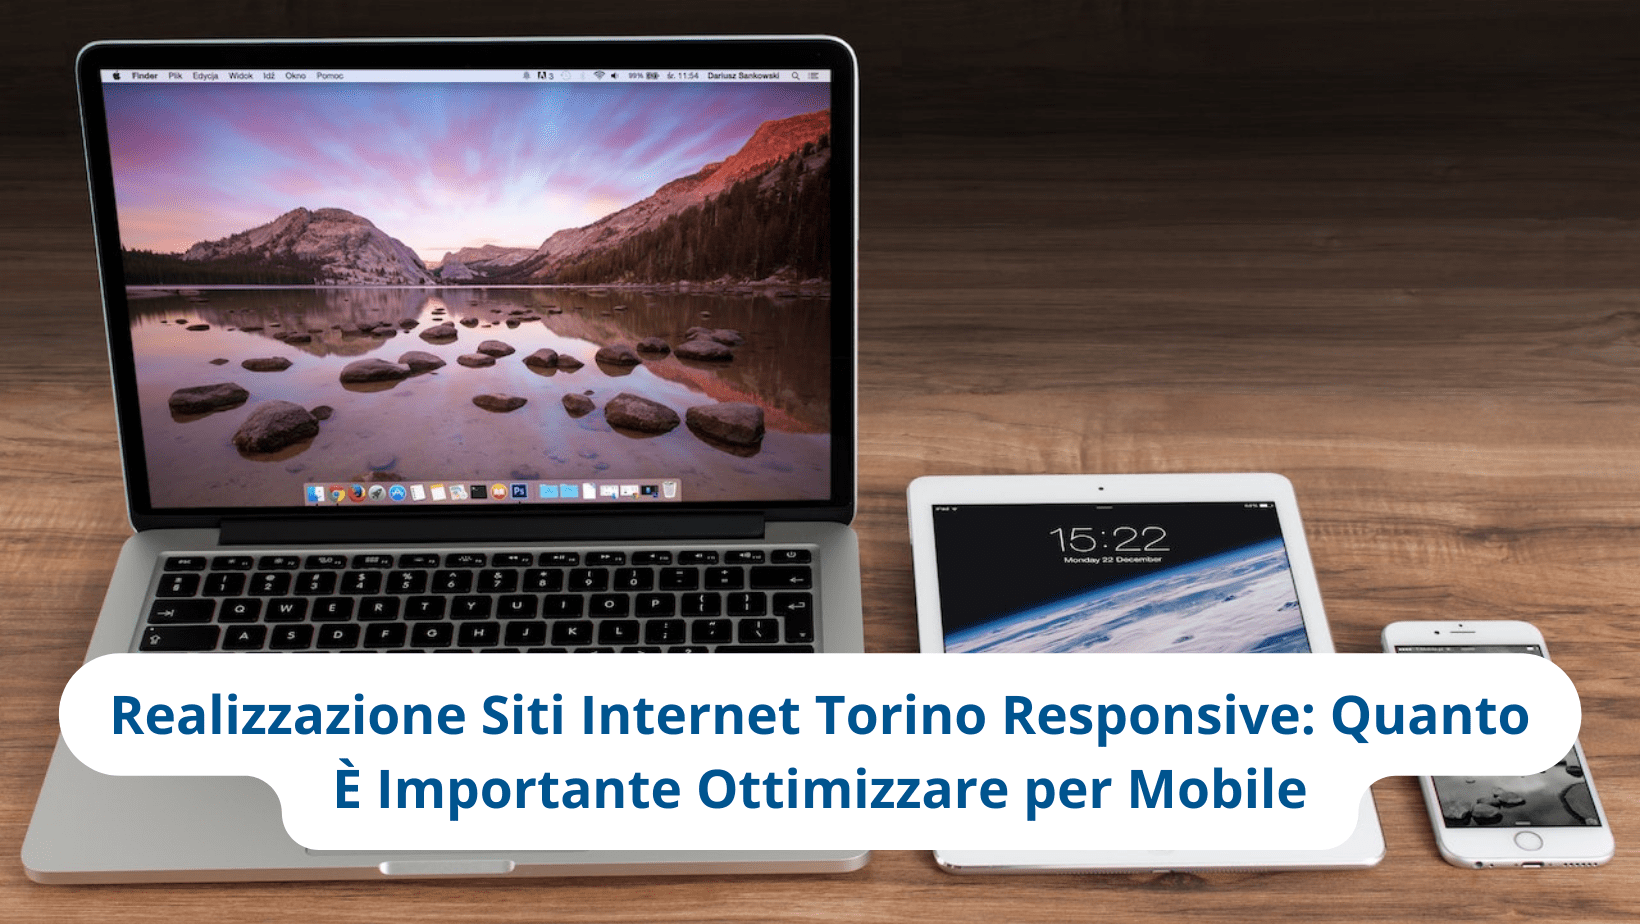 Realizzazione Siti Internet Torino Responsive: Ottimizzare per Mobile